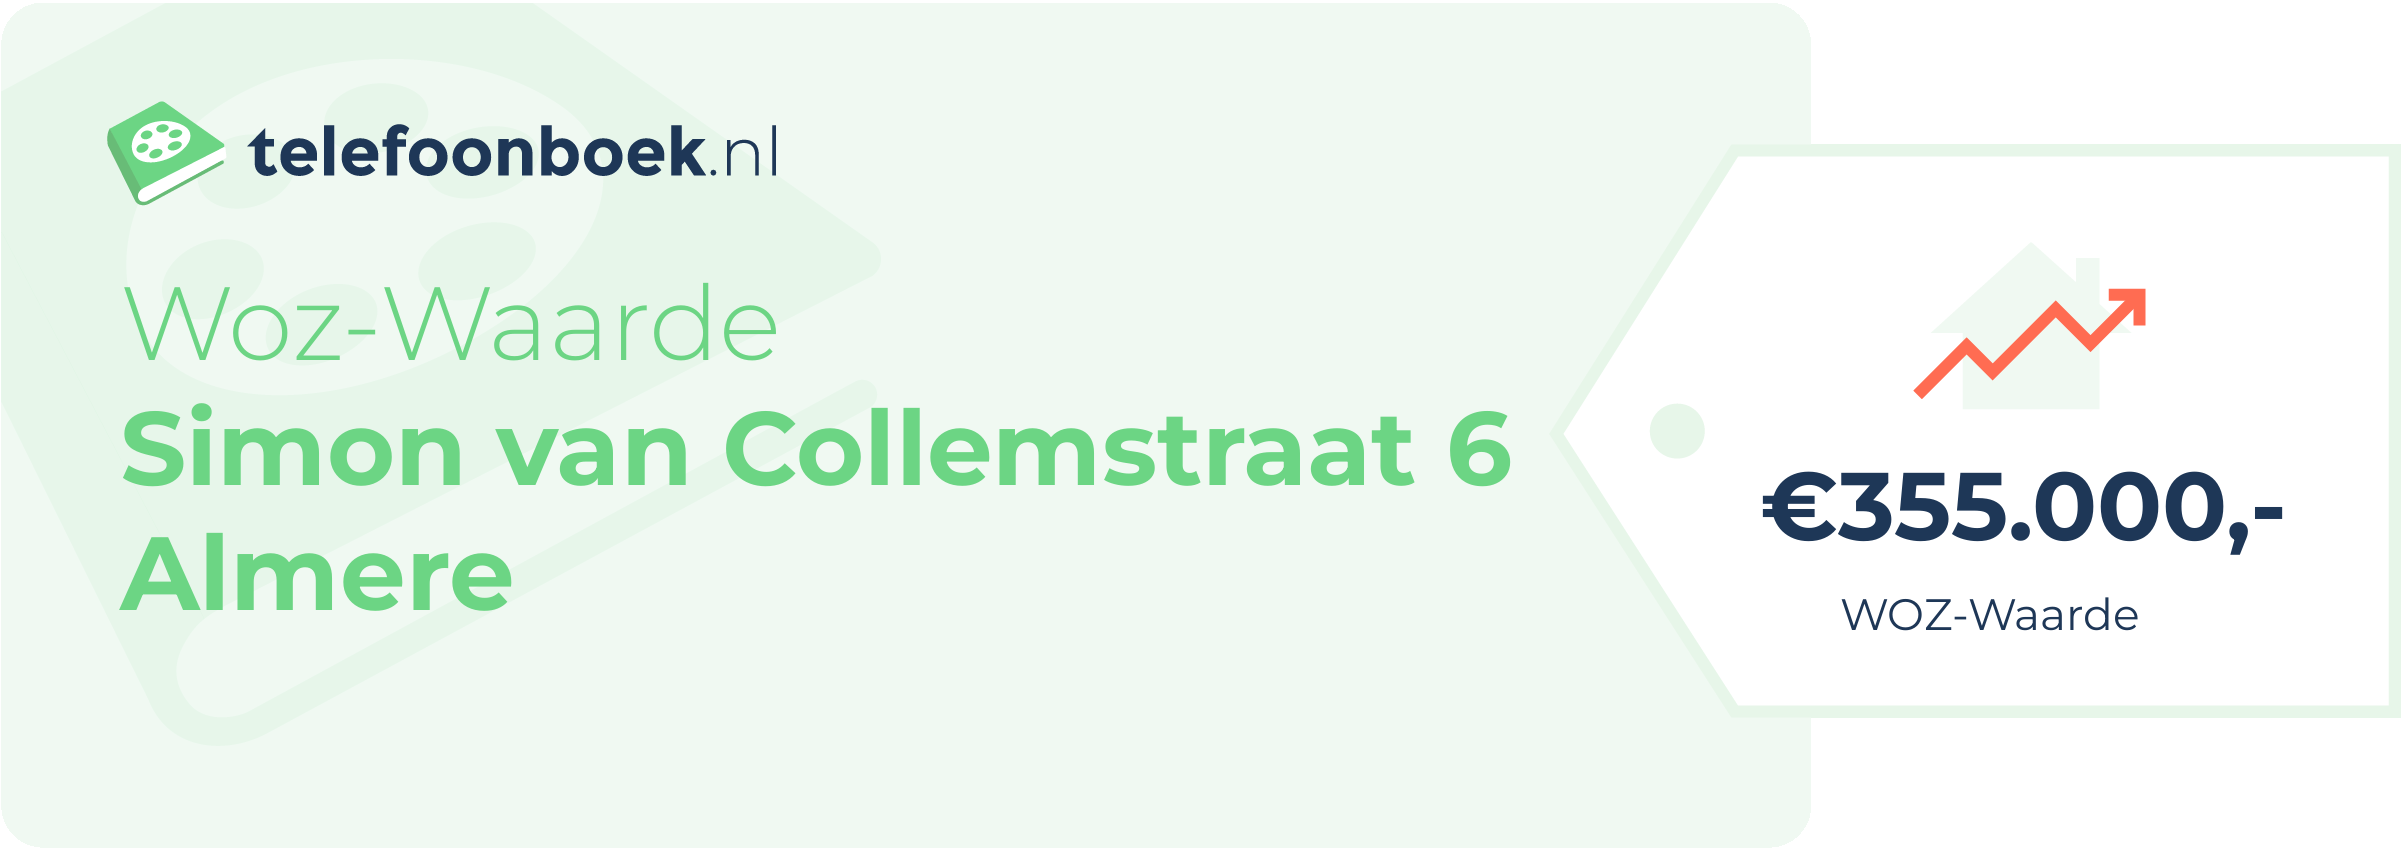 WOZ-waarde Simon Van Collemstraat 6 Almere